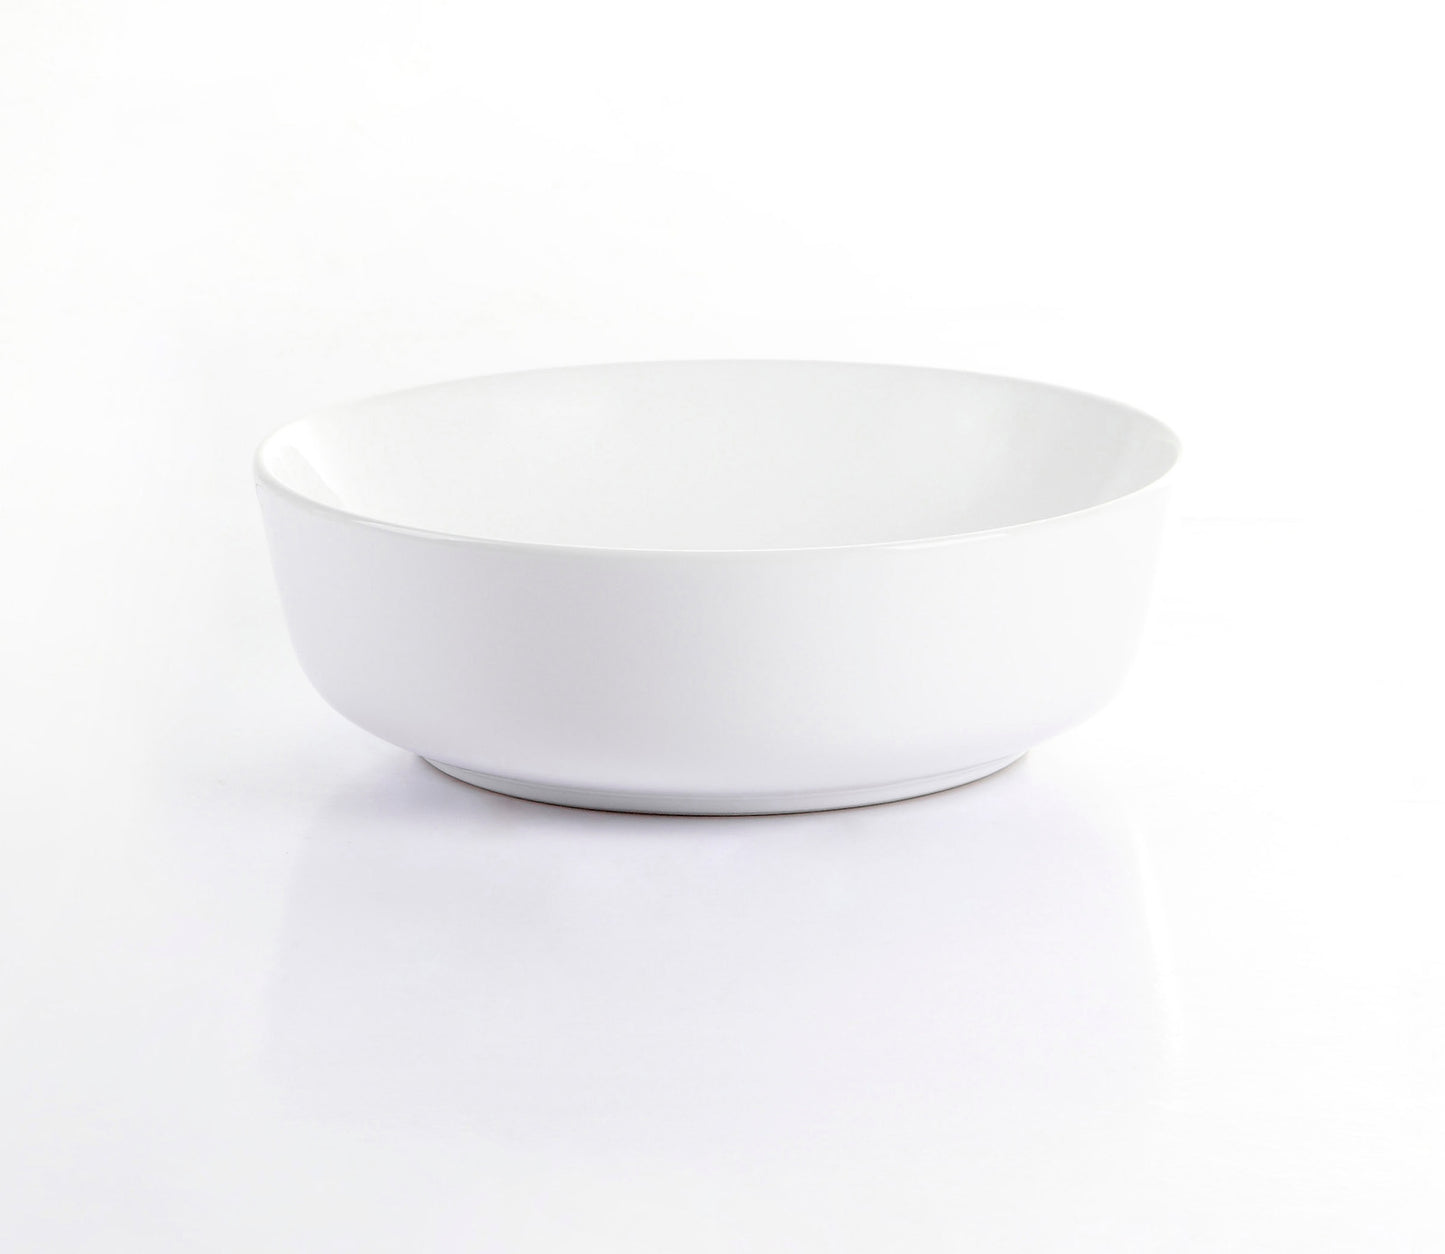 Round Ceramic Countertop Basin Gloss White Finish 420x420x135mm